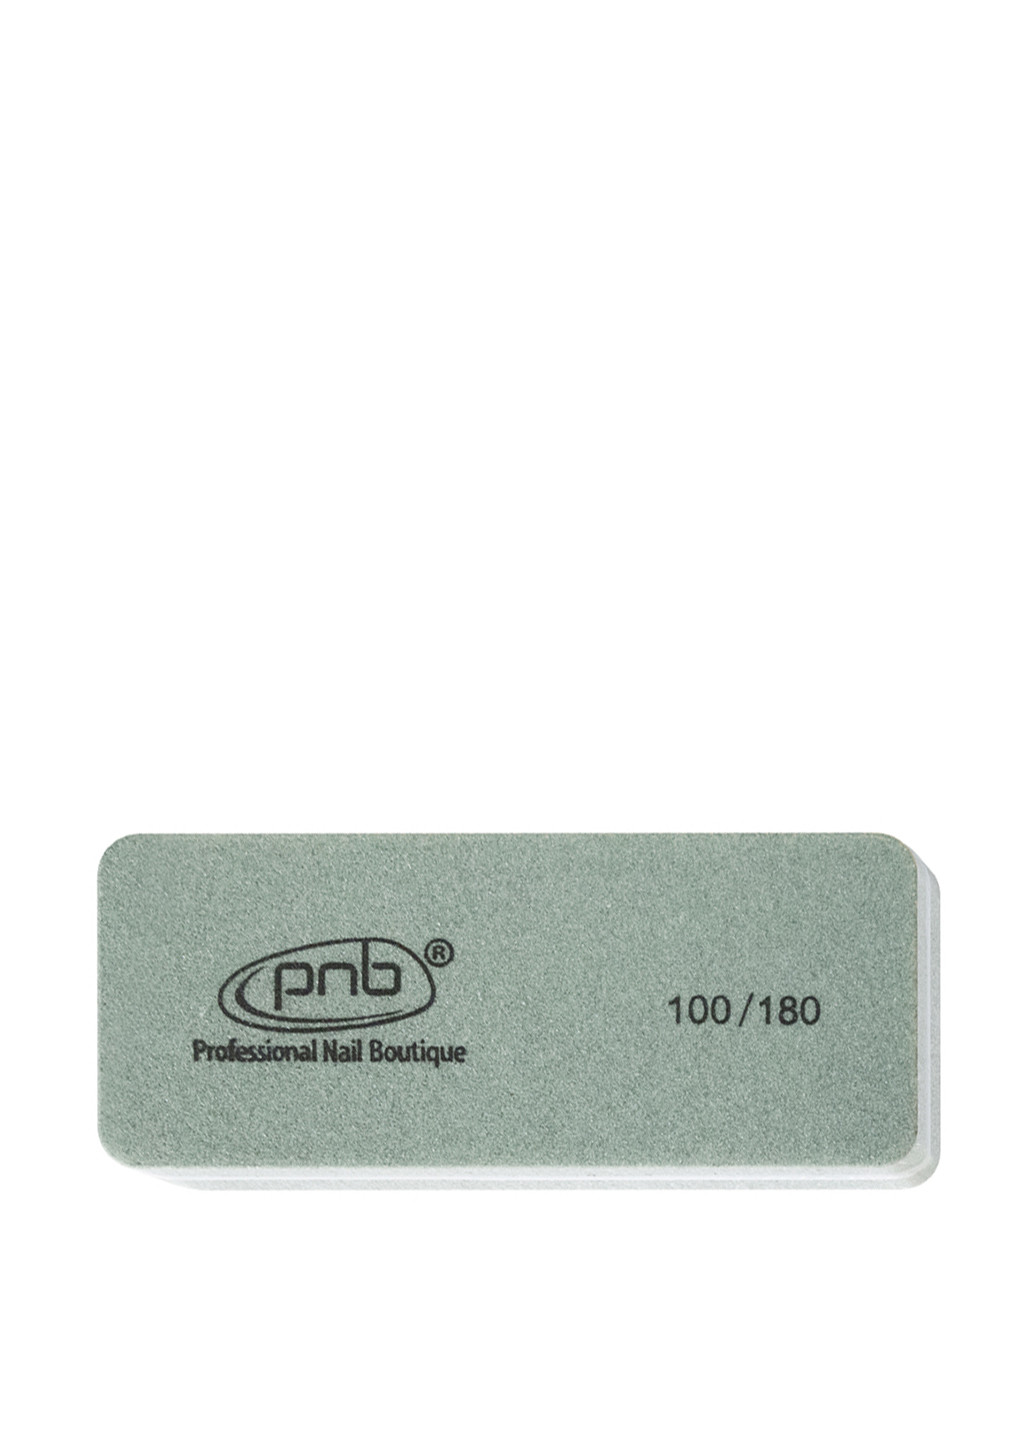 Мини-баф для ногтей прямоугольный 100/180 Grey PNB (83168886)